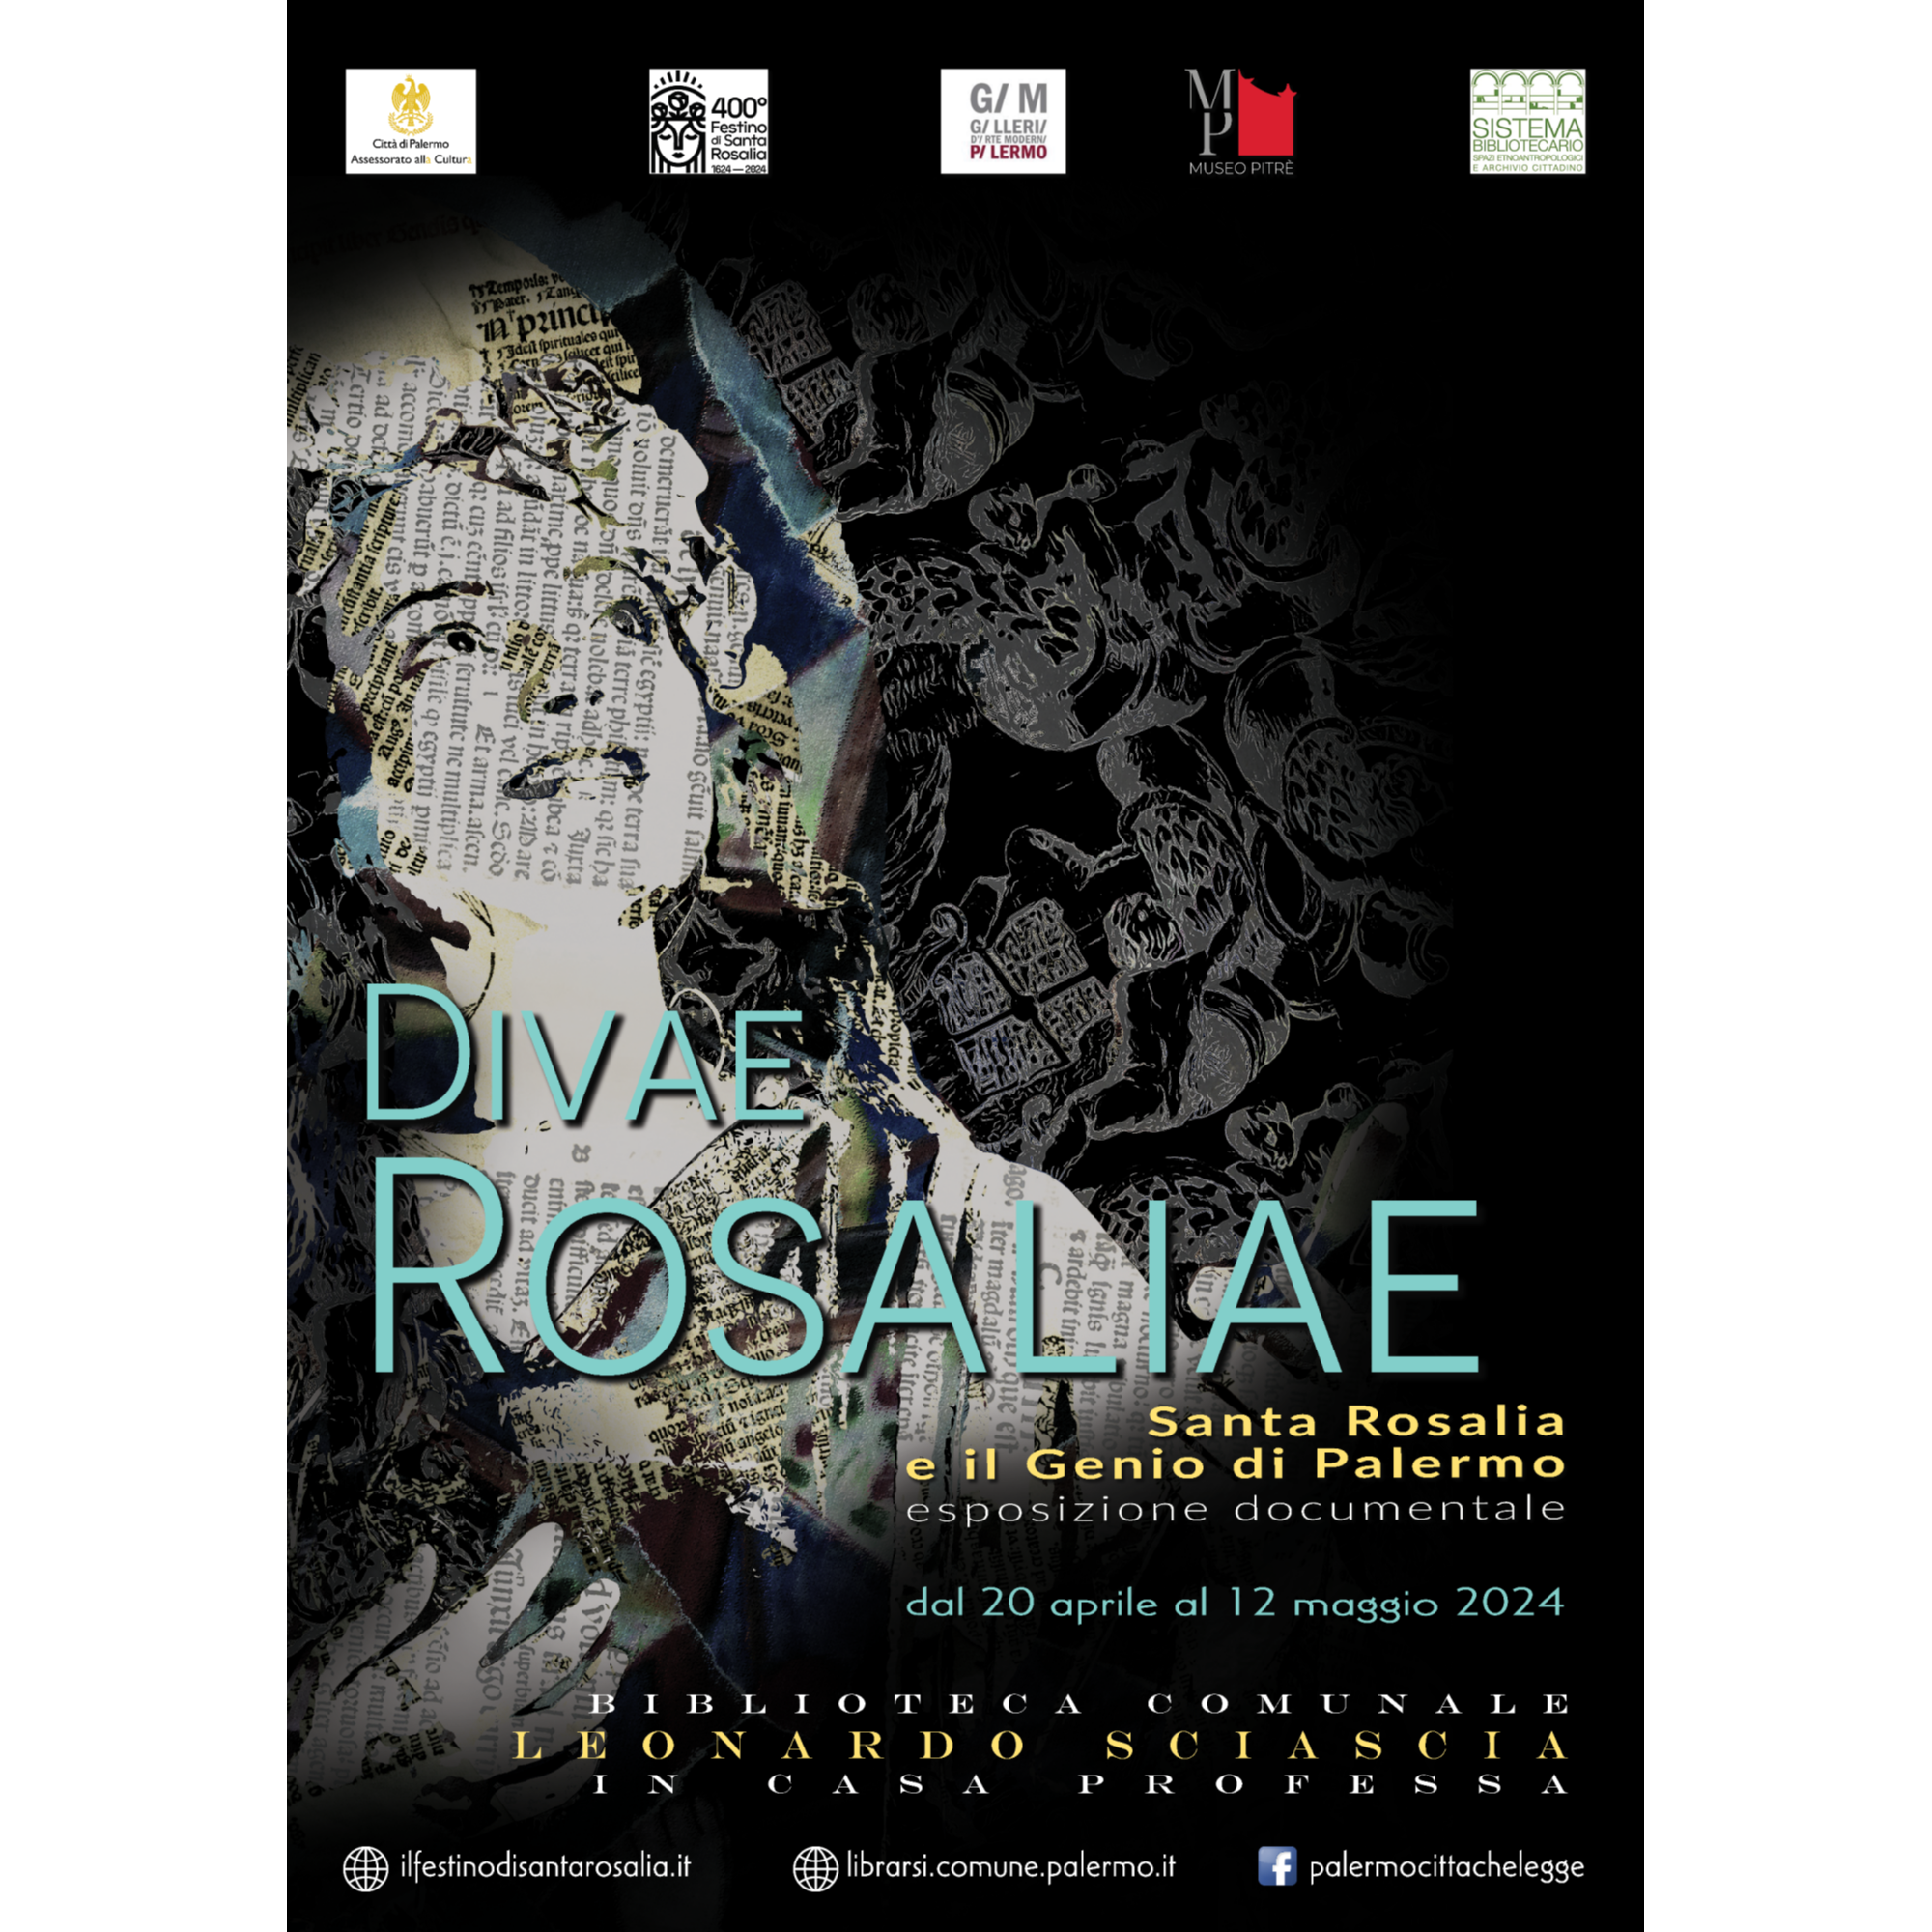 DIVAE ROSALIAE - “Santa Rosalia e il Genio di Palermo”